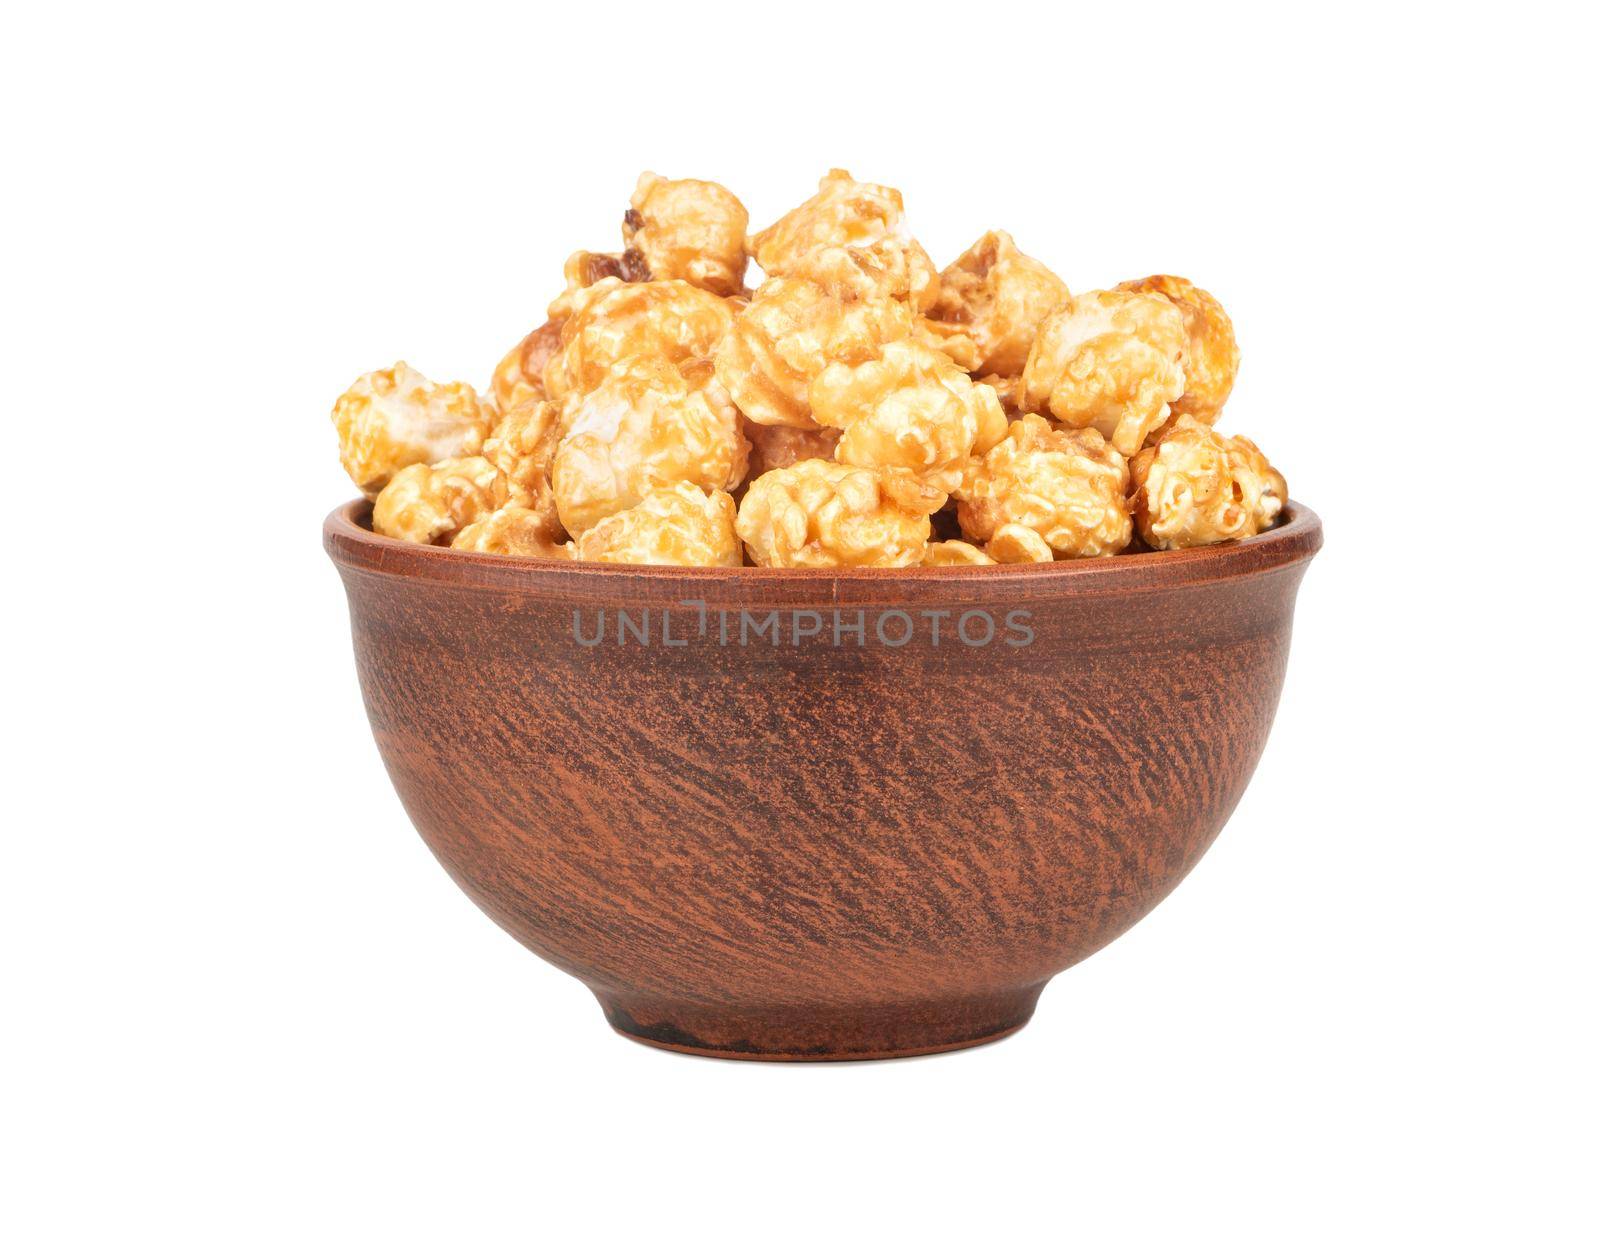 Ceramic bowl with caramel popcorn isolated on white background